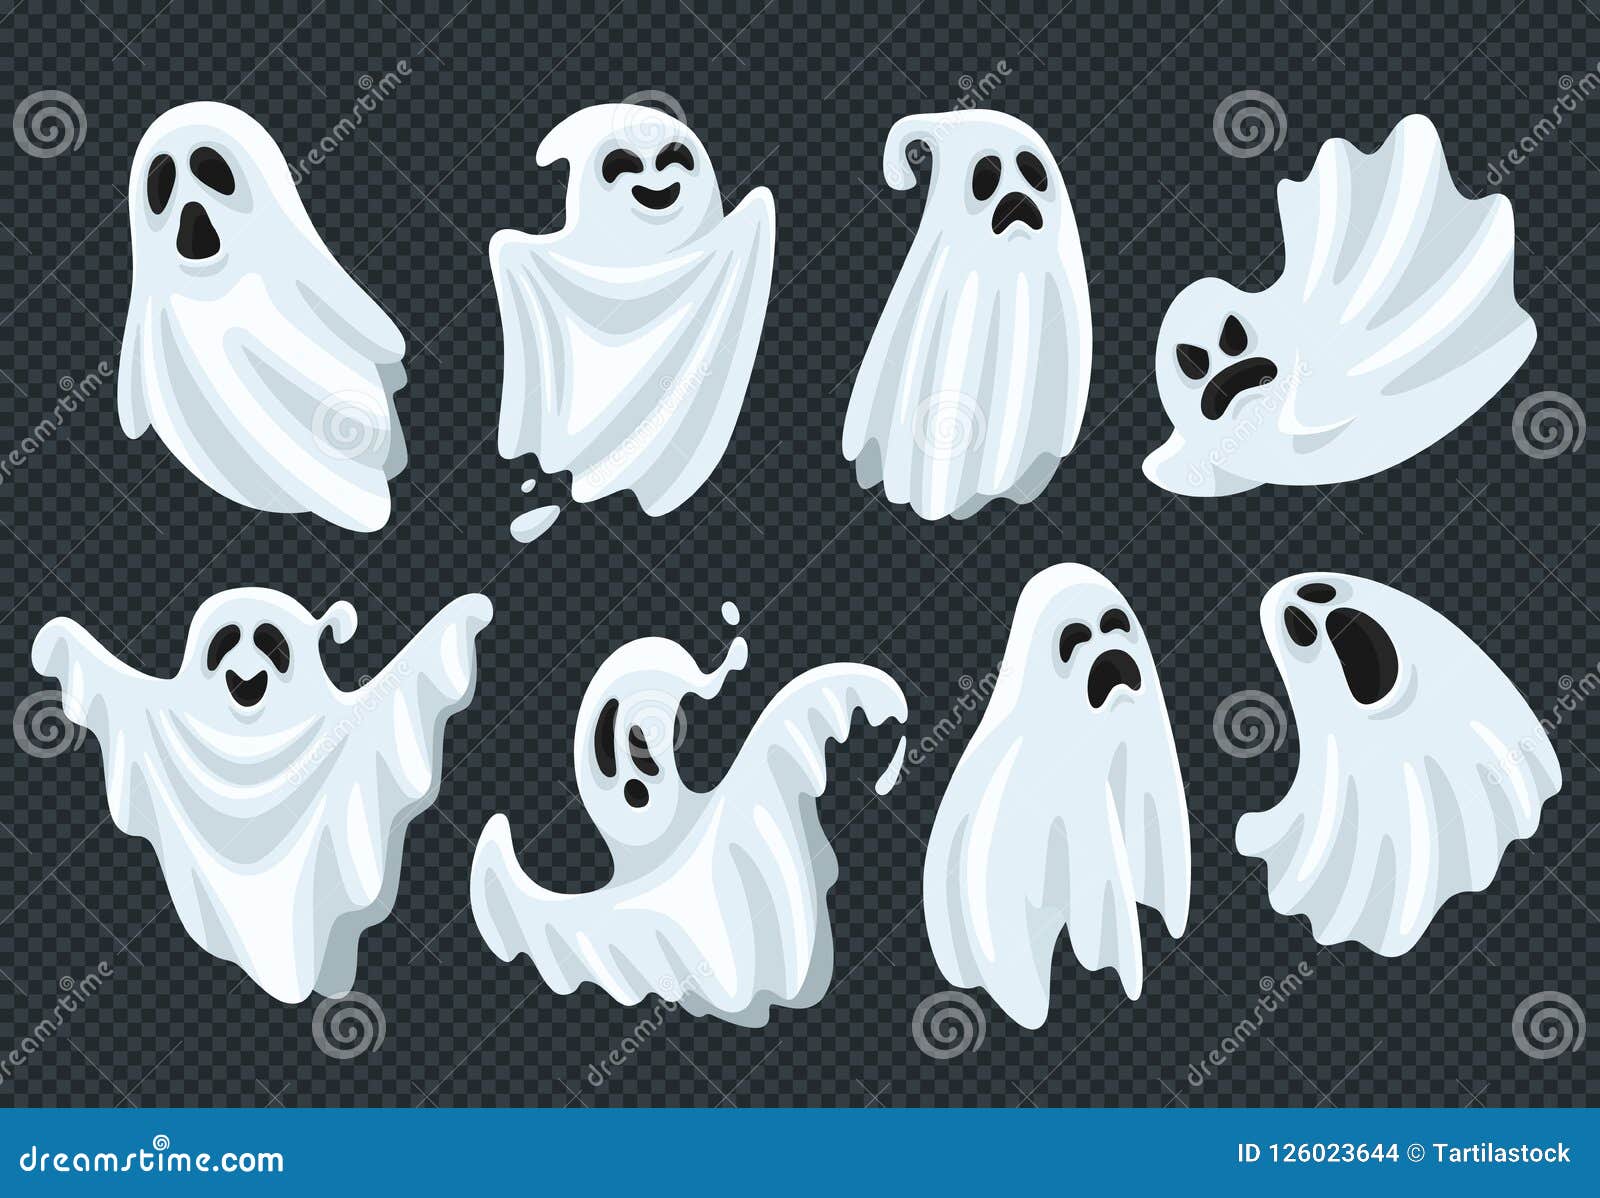 鬼的与可怕面孔的万圣夜鬼魂飞行幽灵精神在白色织品传染媒介例证集合的鬼的幻象向量例证 插画包括有滑稽 蠕动